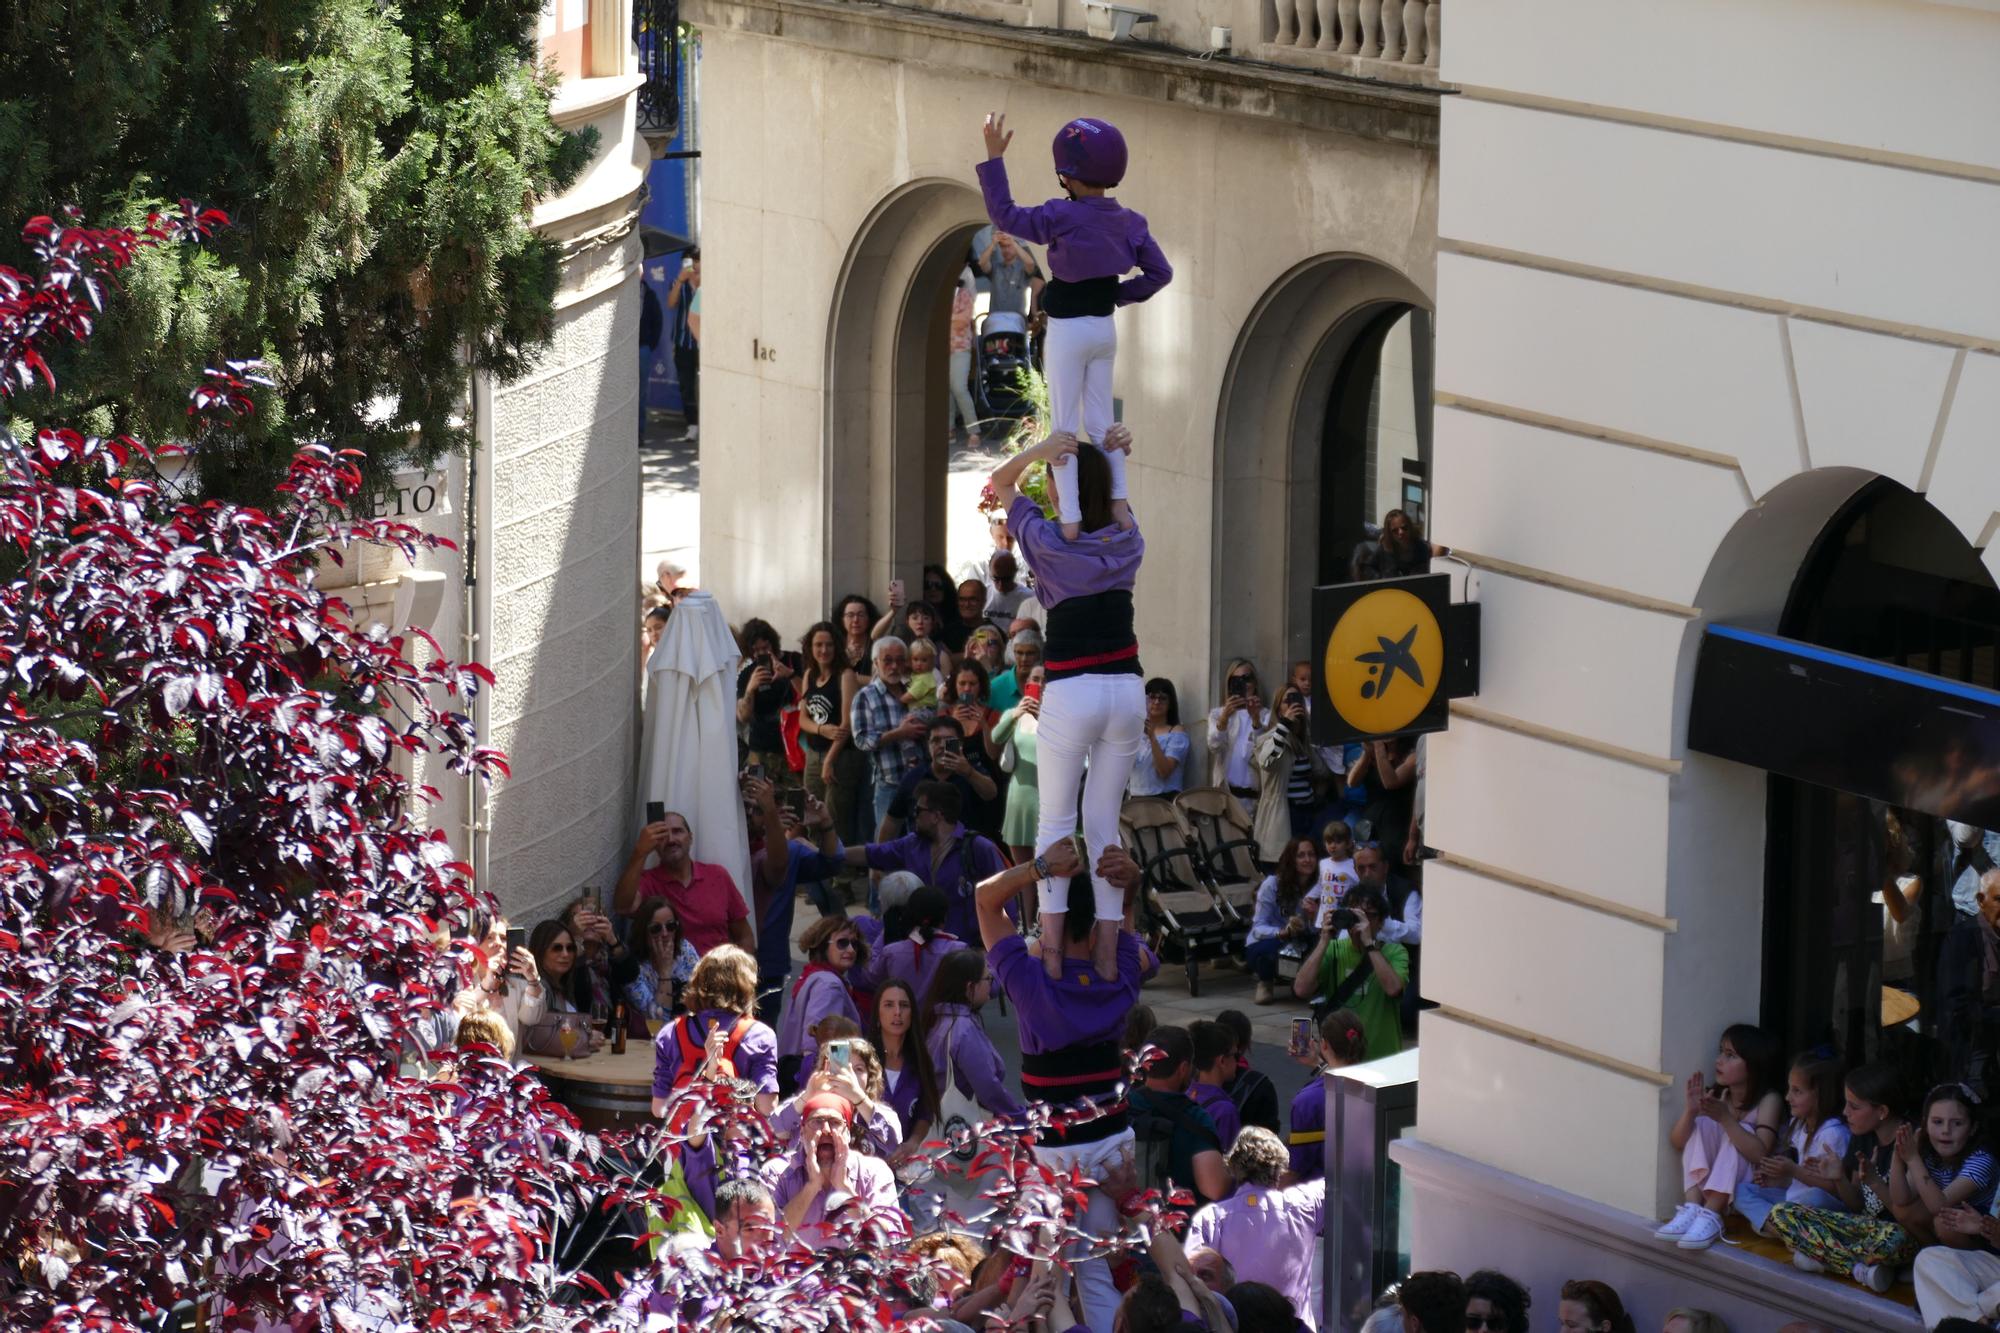 Així s'ha viscut la Diada de Santa Creu a Figueres